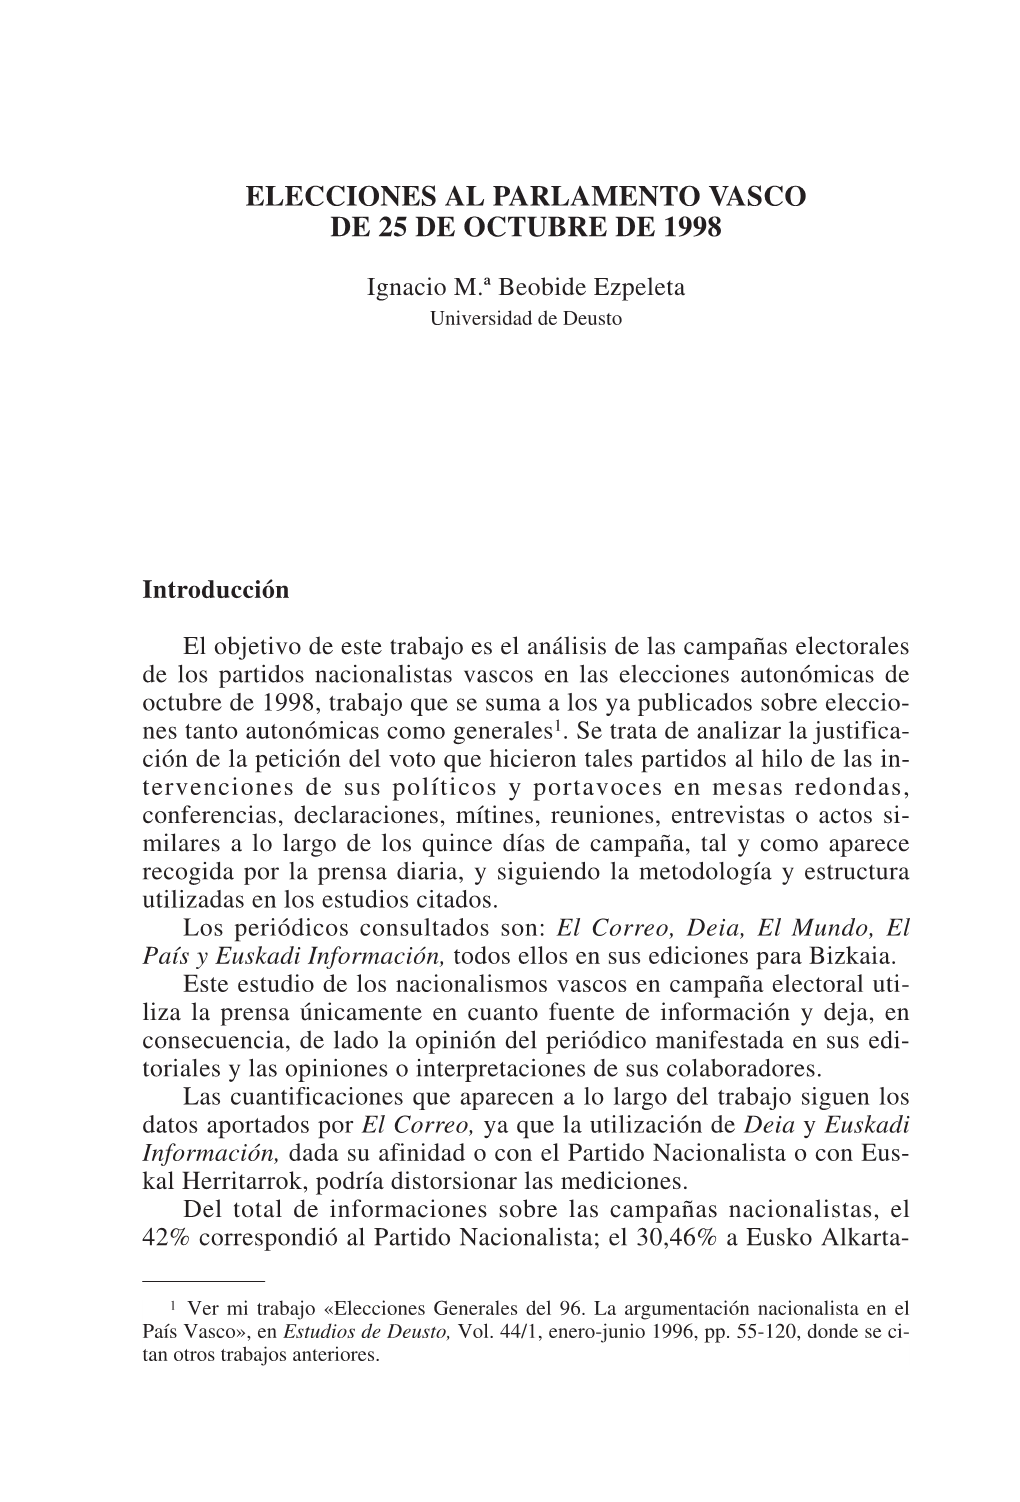 Estudios De Deusto Vol. 46/2 Julio-Diciembre 1998